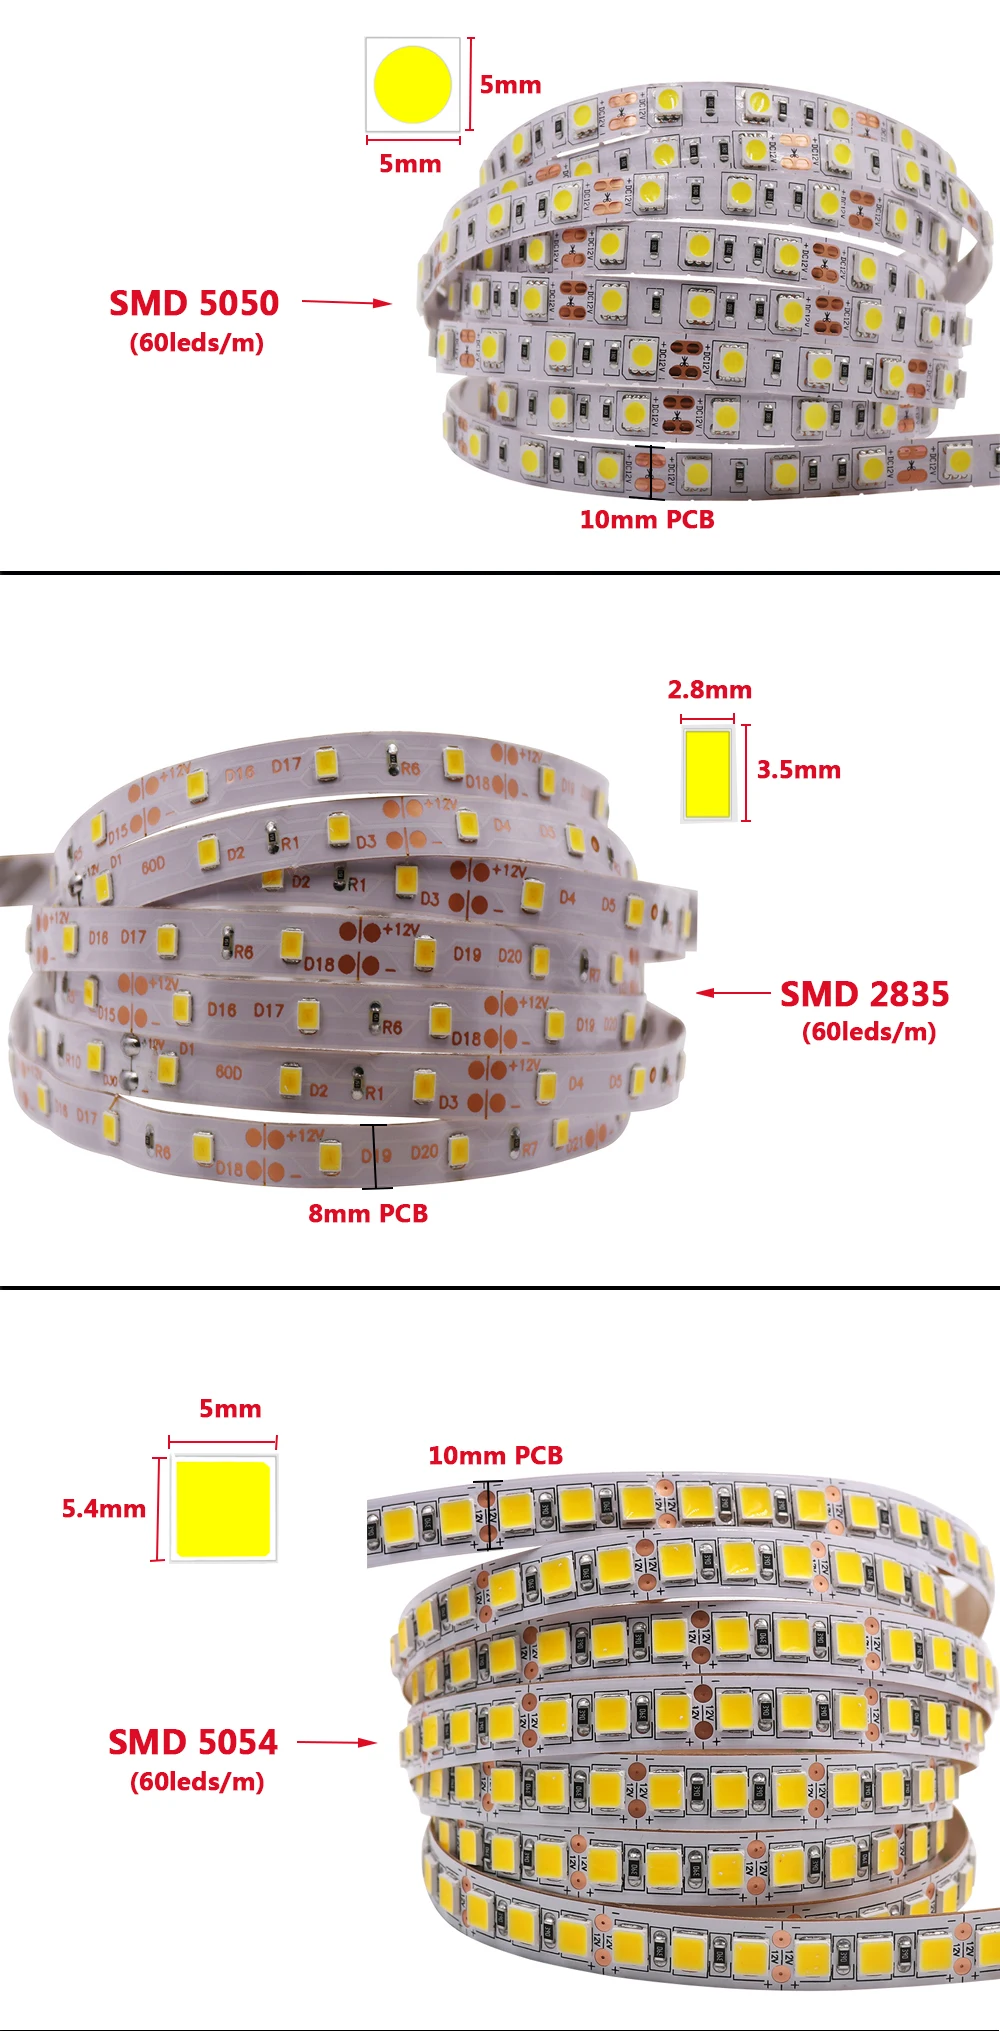 SMD 2835 5050 Светодиодная лента светильник 12В водить 60leds/M водонепроницаемый IP65 IP21 белый/теплый белый/RGB/белый/красный/синий/зеленый Гибкие веревки в полоску